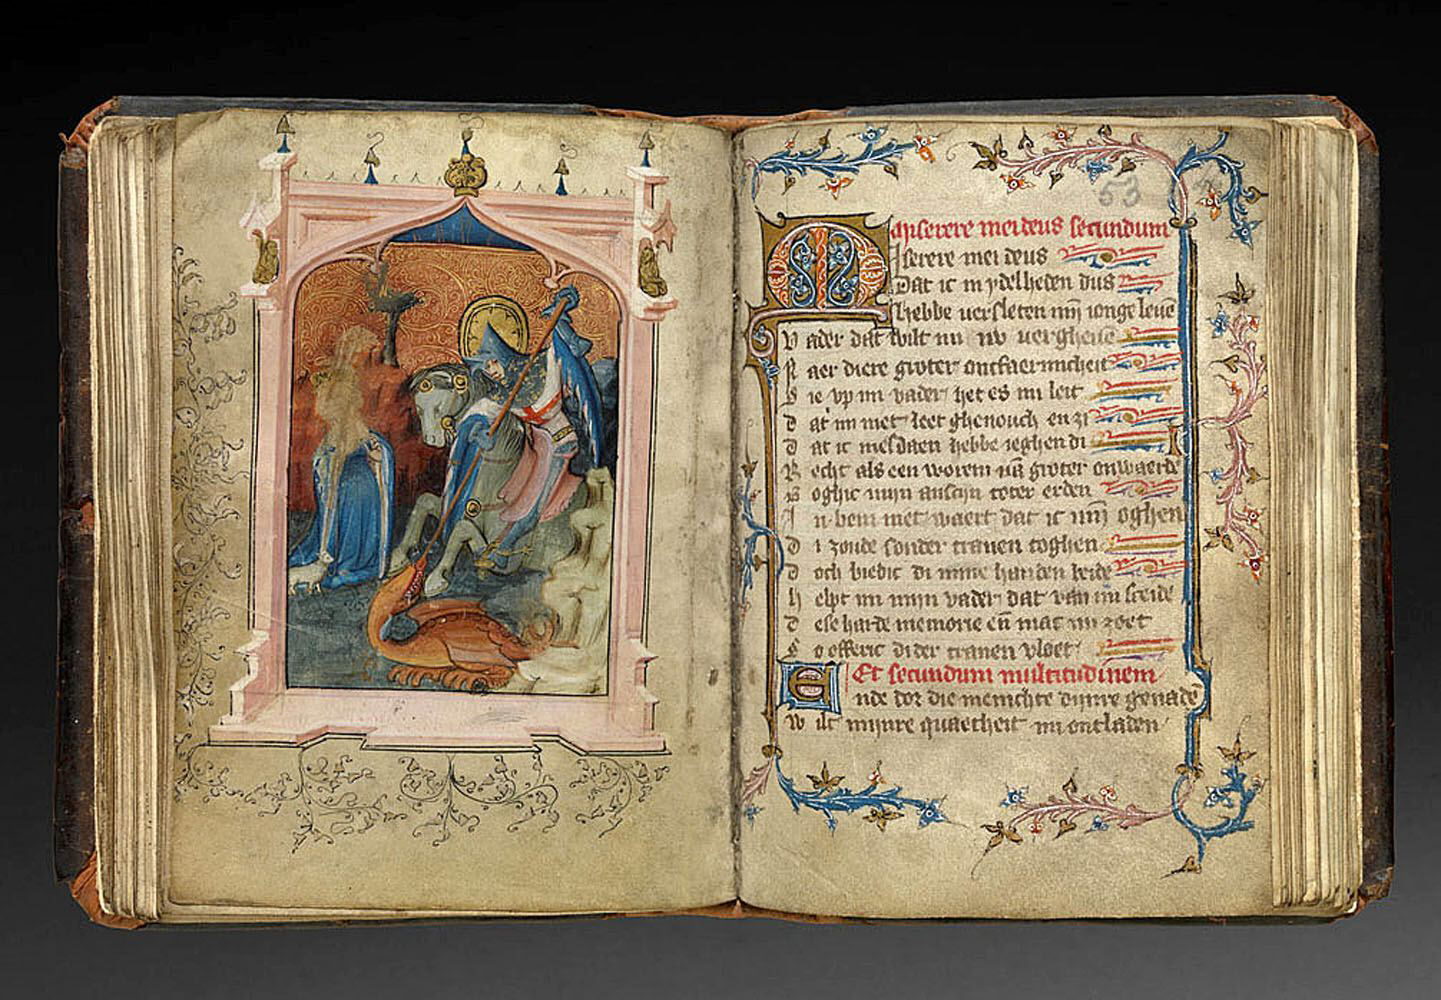 Brujas expone el manuscrito Gruuthuse, perla de la literatura medieval